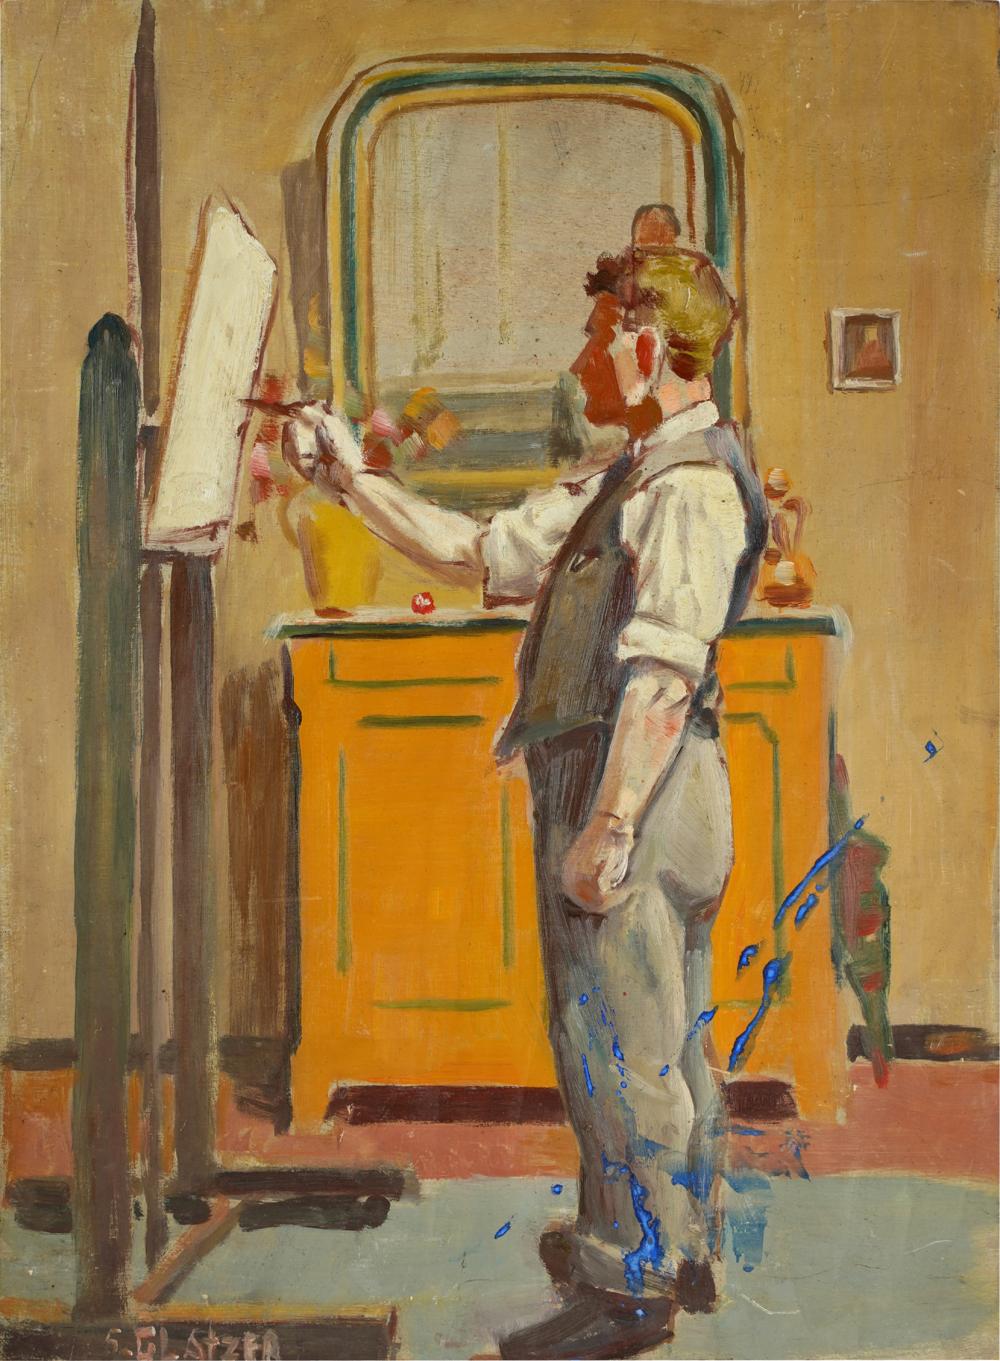 SIMON GLATZER (1890 - 1945): THE ARTISToil